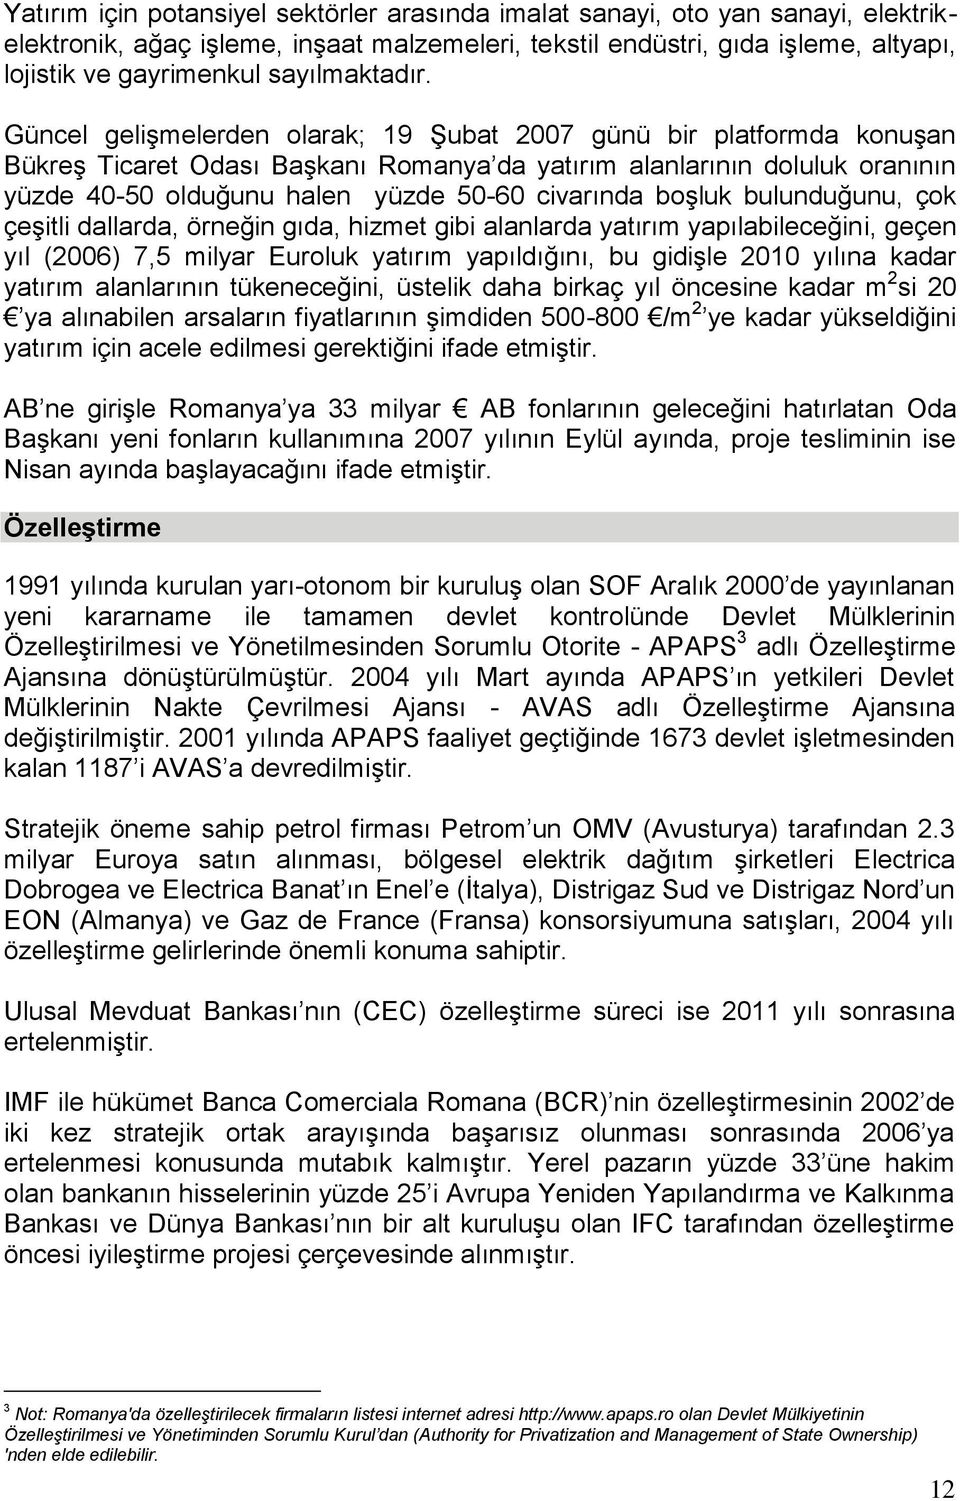 Güncel geliģmelerden olarak; 19 ġubat 2007 günü bir platformda konuģan BükreĢ Ticaret Odası BaĢkanı Romanya da yatırım alanlarının doluluk oranının yüzde 40-50 olduğunu halen yüzde 50-60 civarında